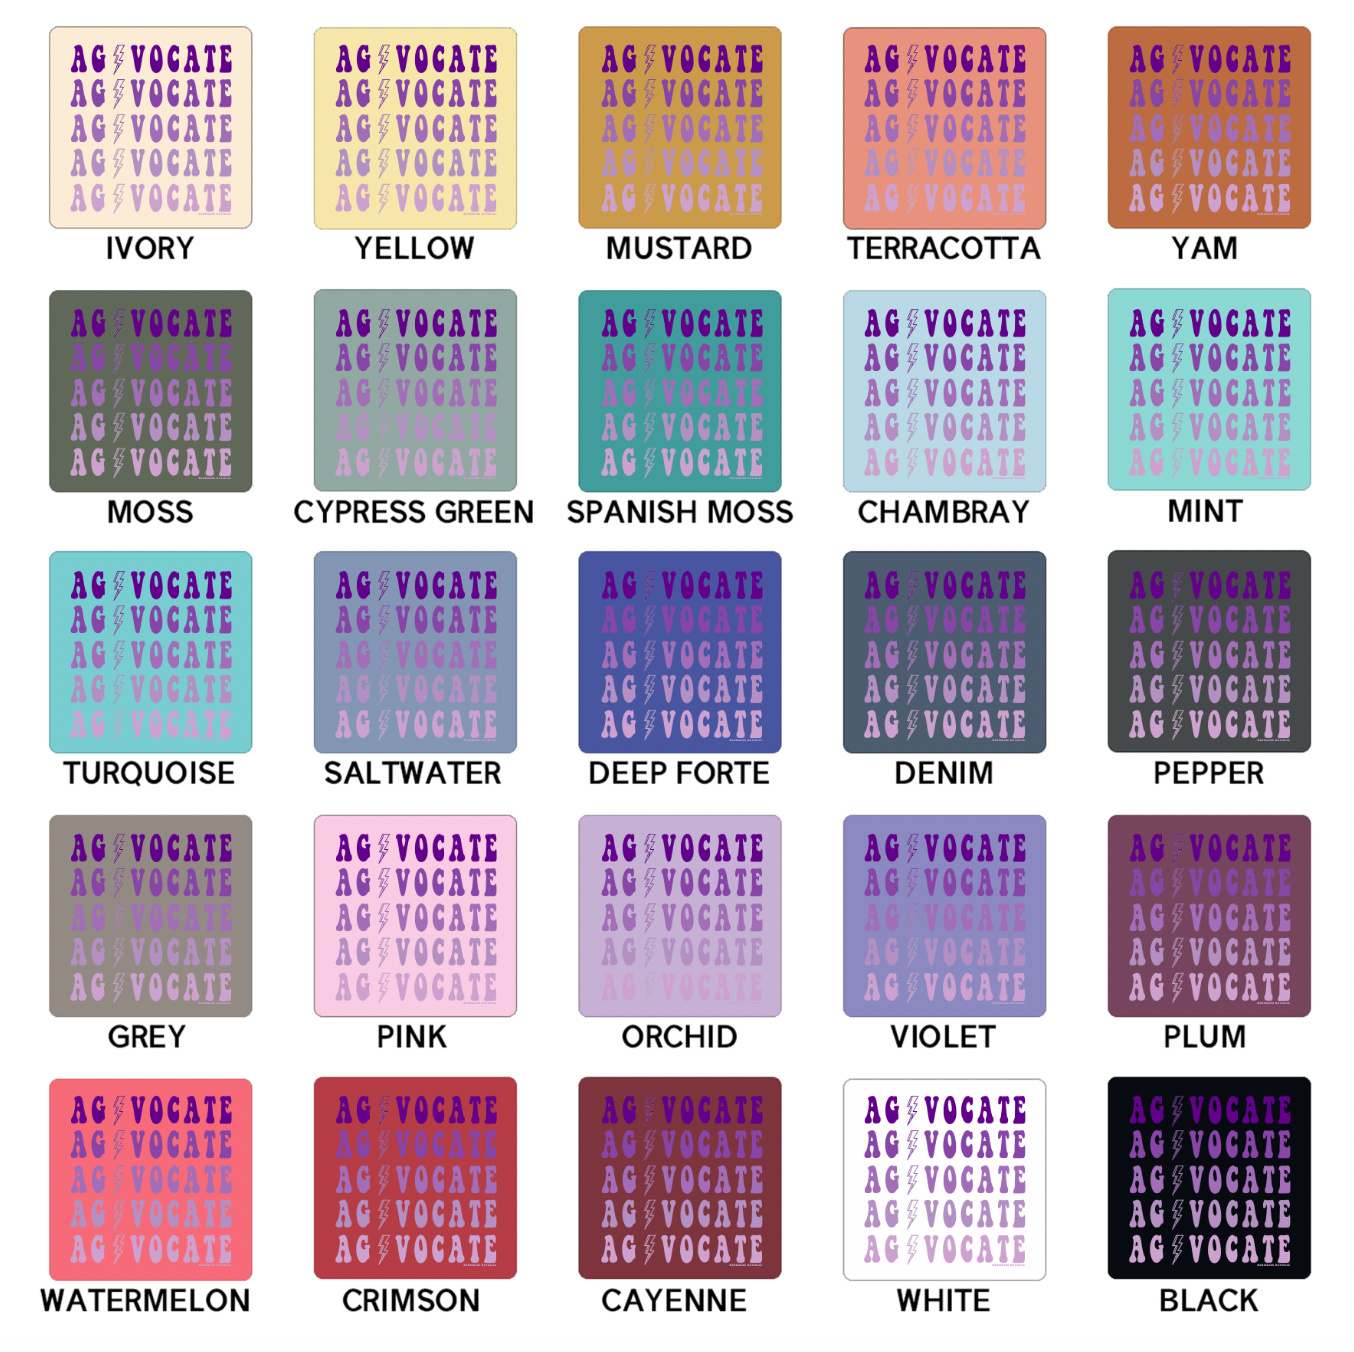 Agvocate Bolt Purple ComfortWash/ComfortColor T-Shirt (S-4XL) - Multiple Colors!